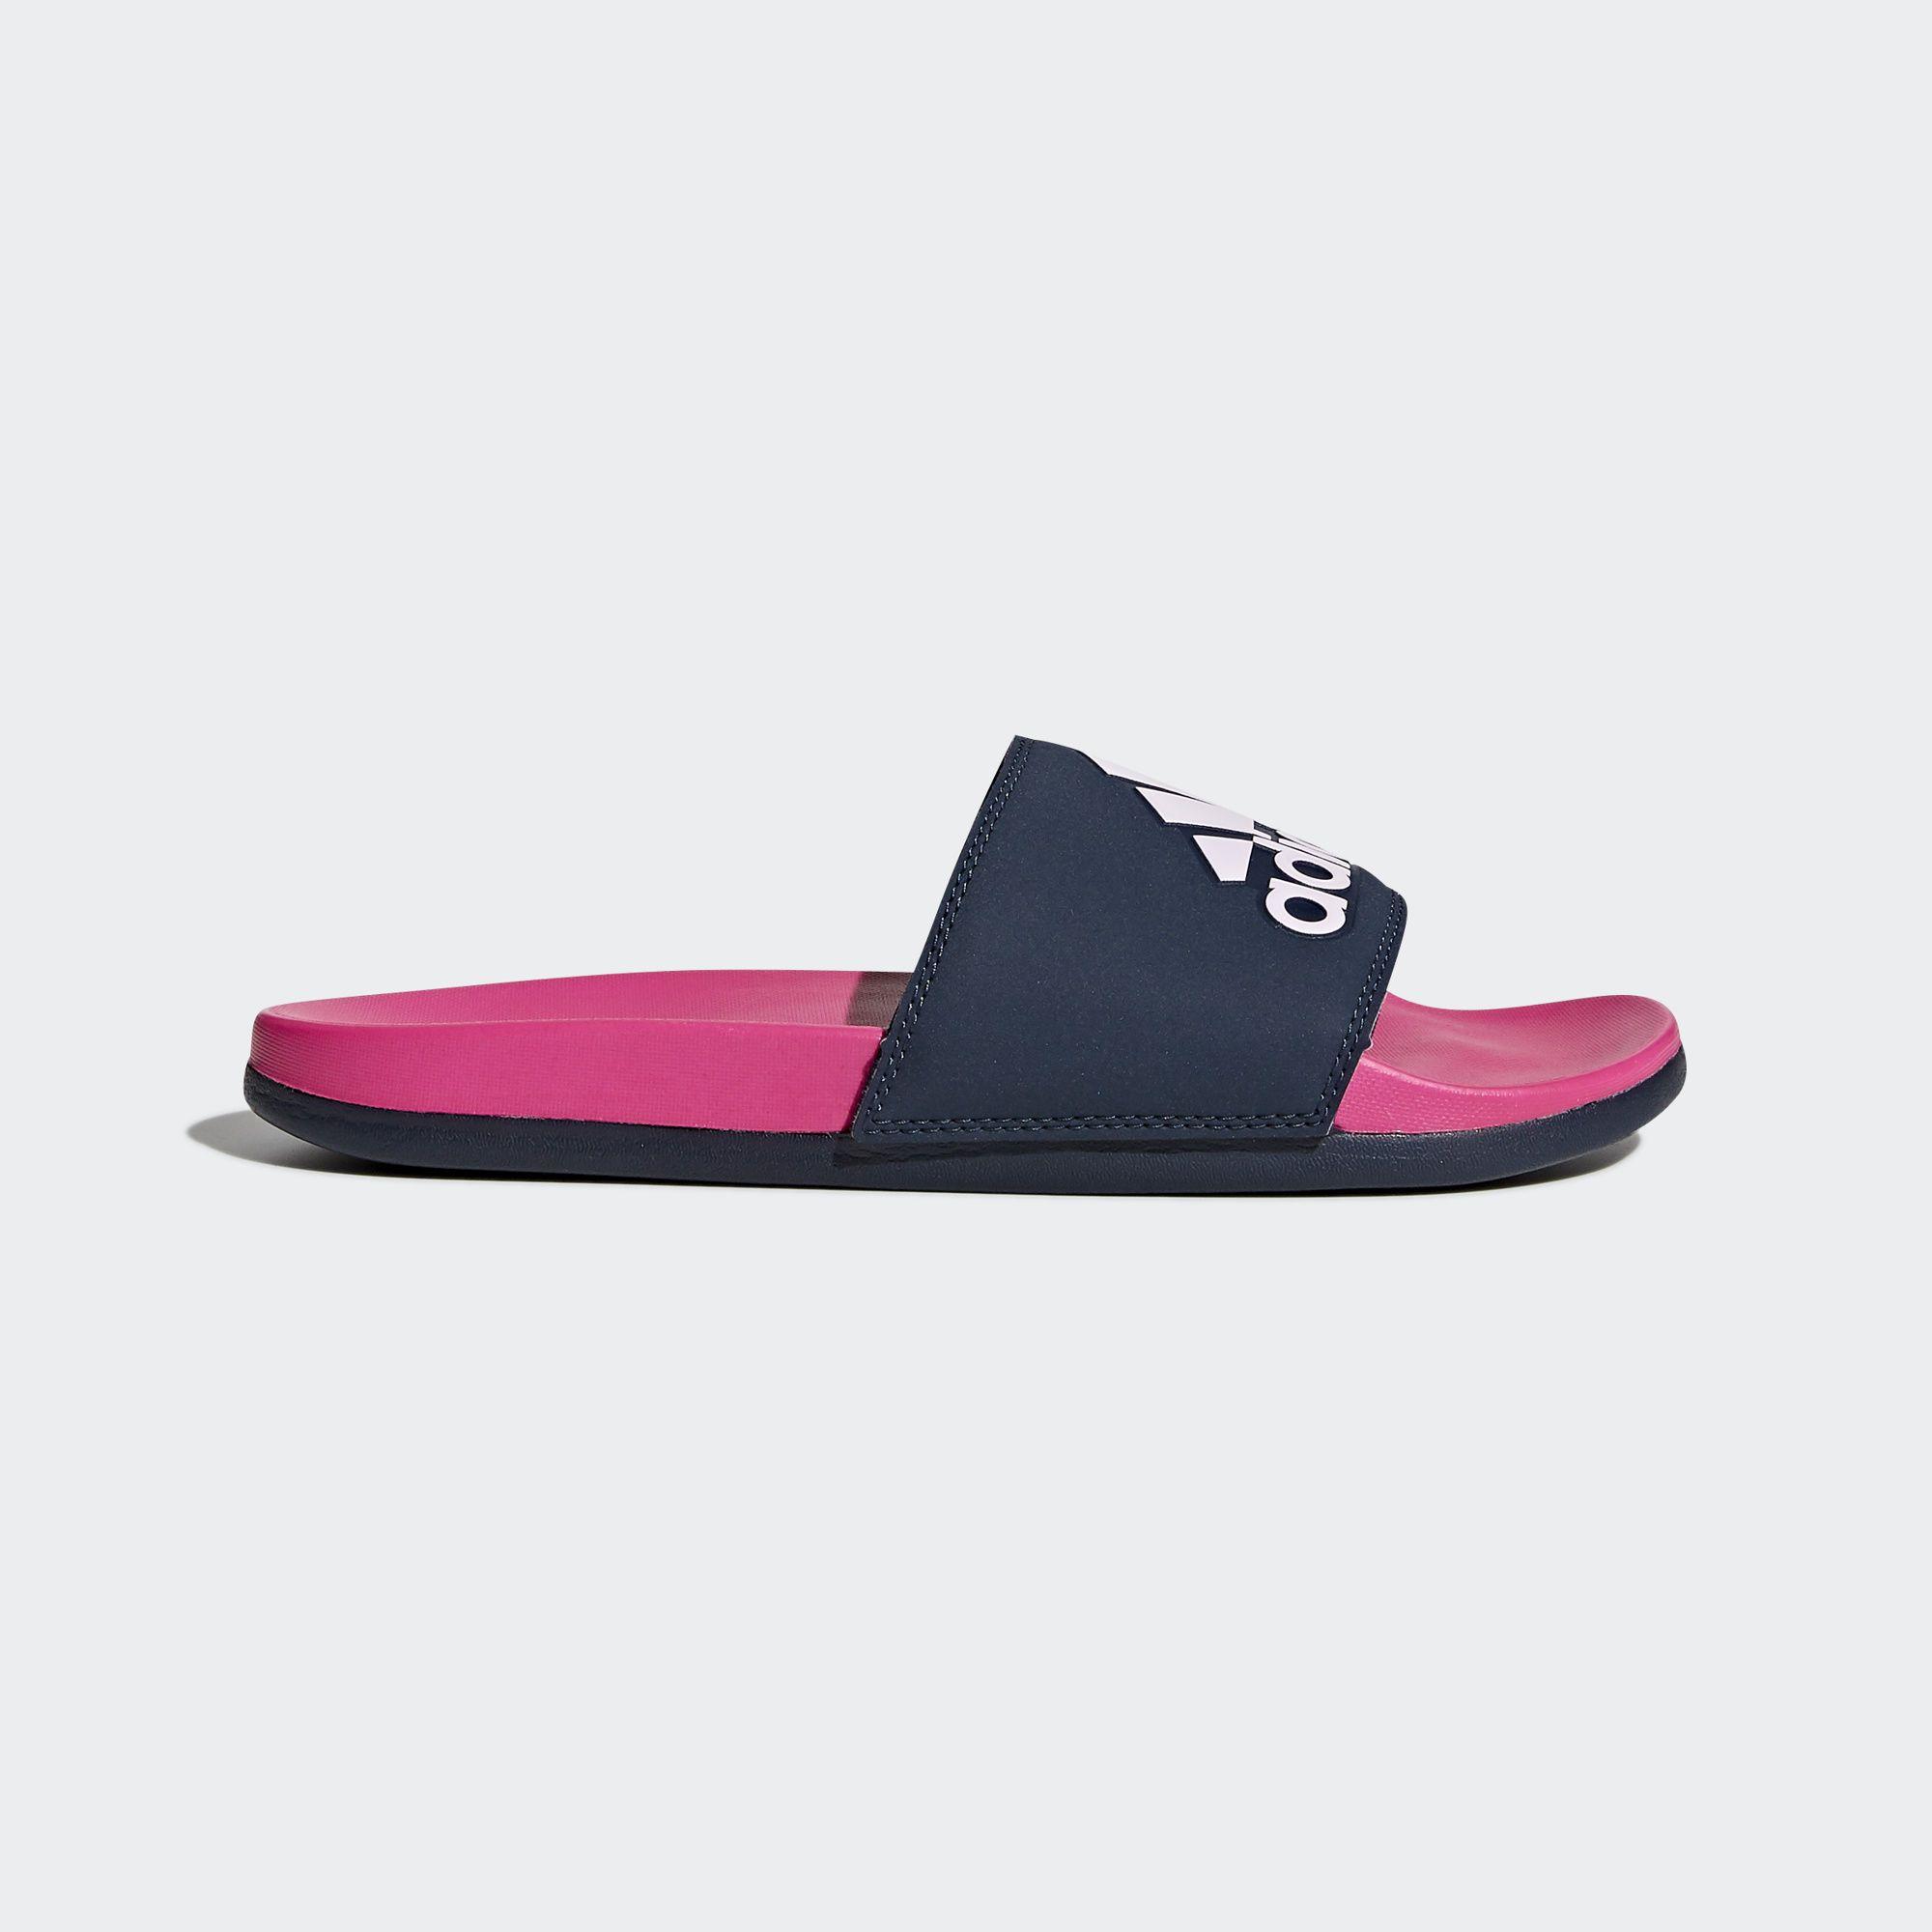 Pink Swimming Logo - Cheap Price Hot Sale Adidas Shock Pink/Collegiate Navy/Aero Pink ...